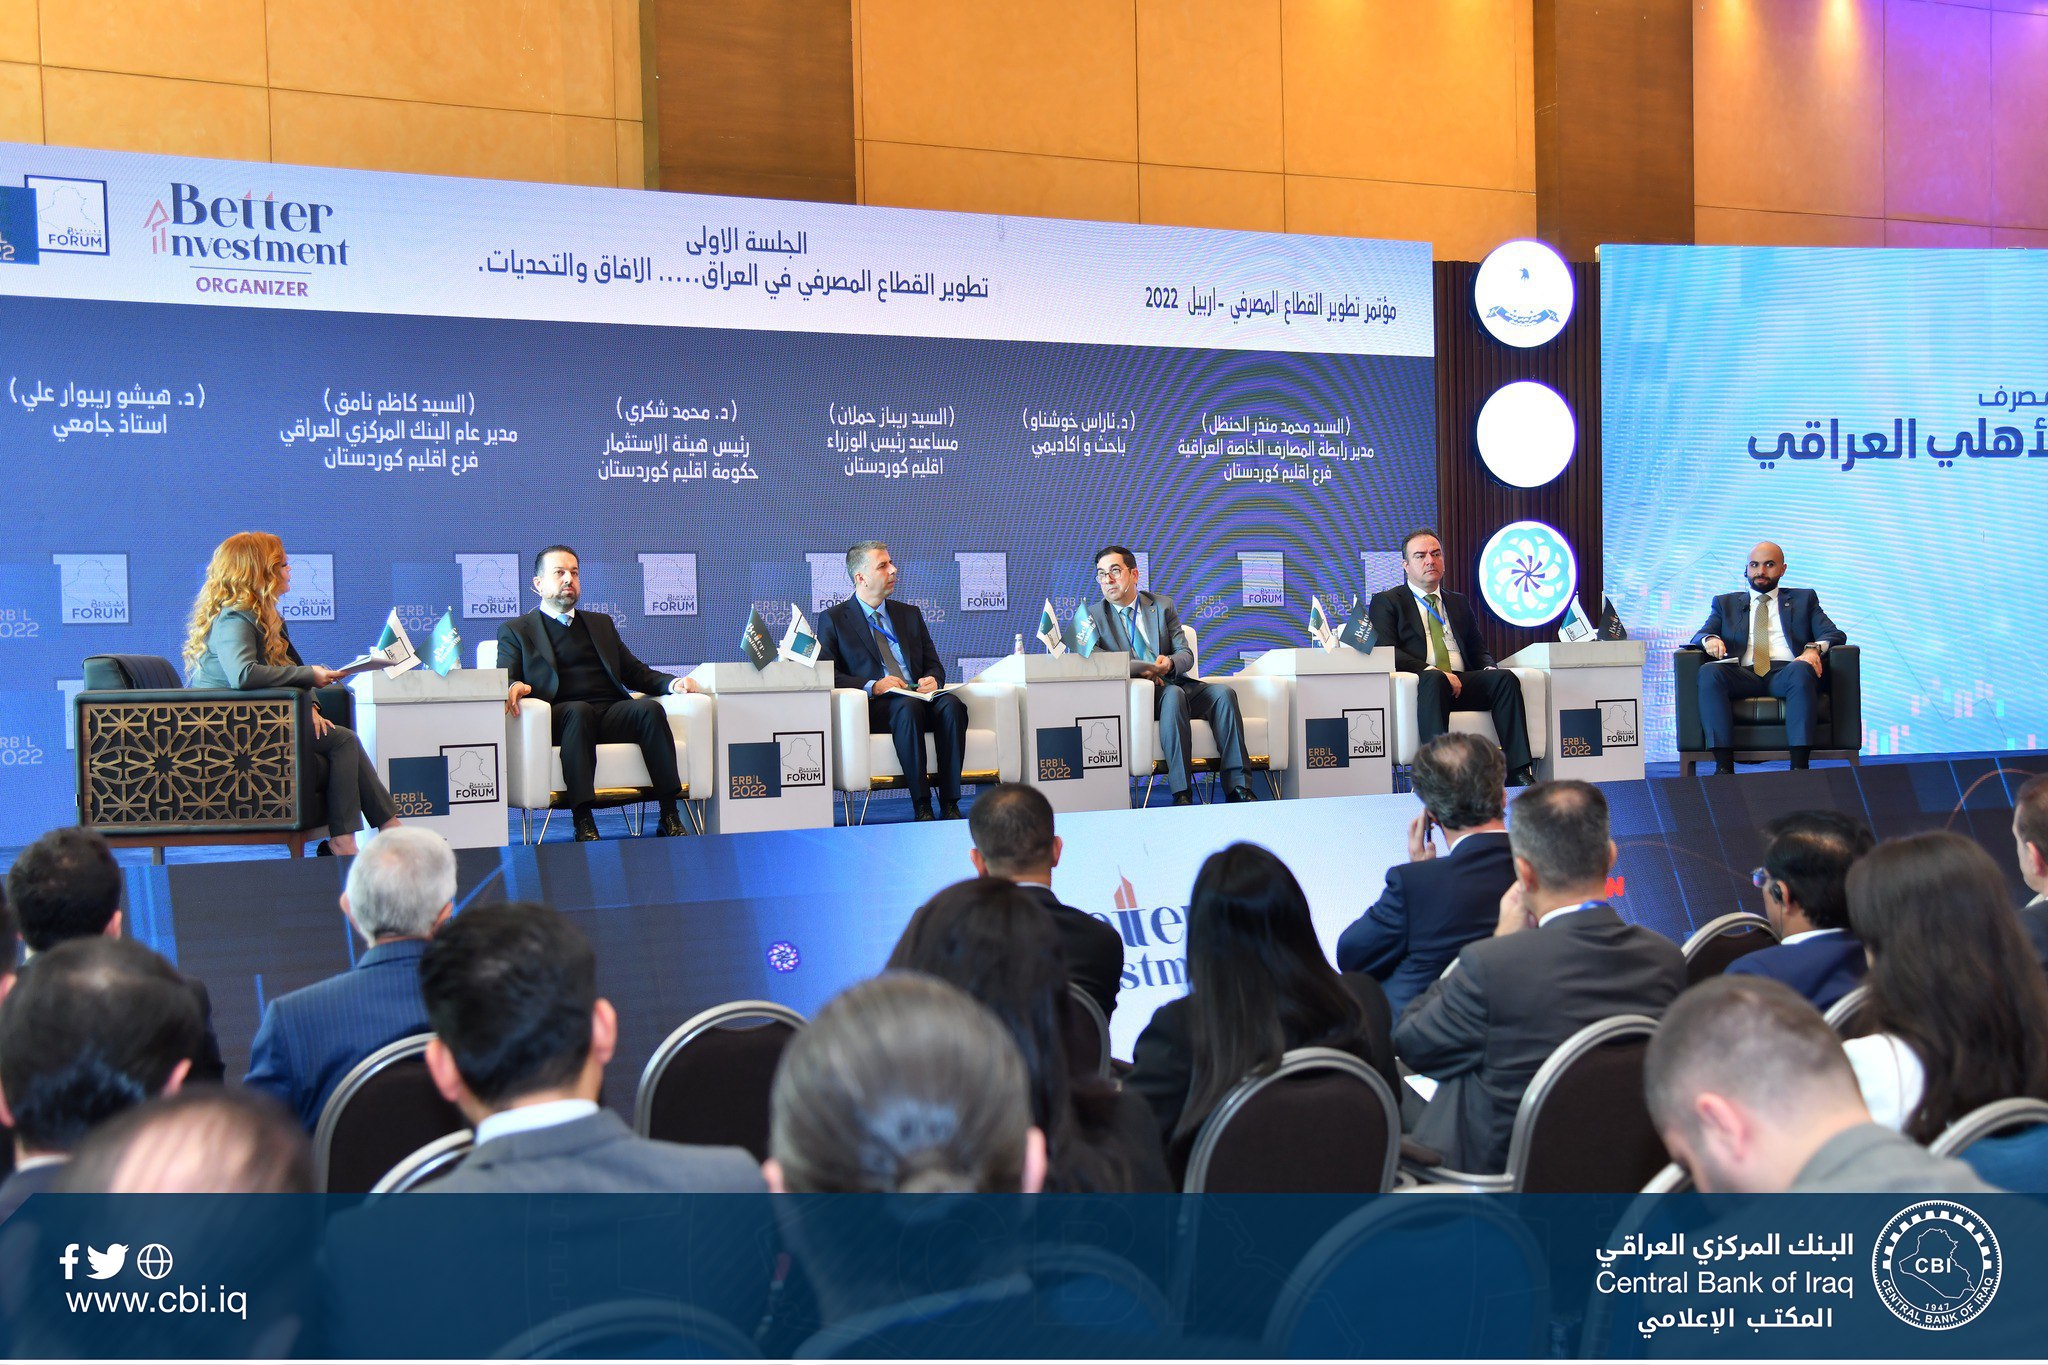 البنك المركزي العراقي يشارك في مؤتمر تطوير القطاع المصرفي في أربيل